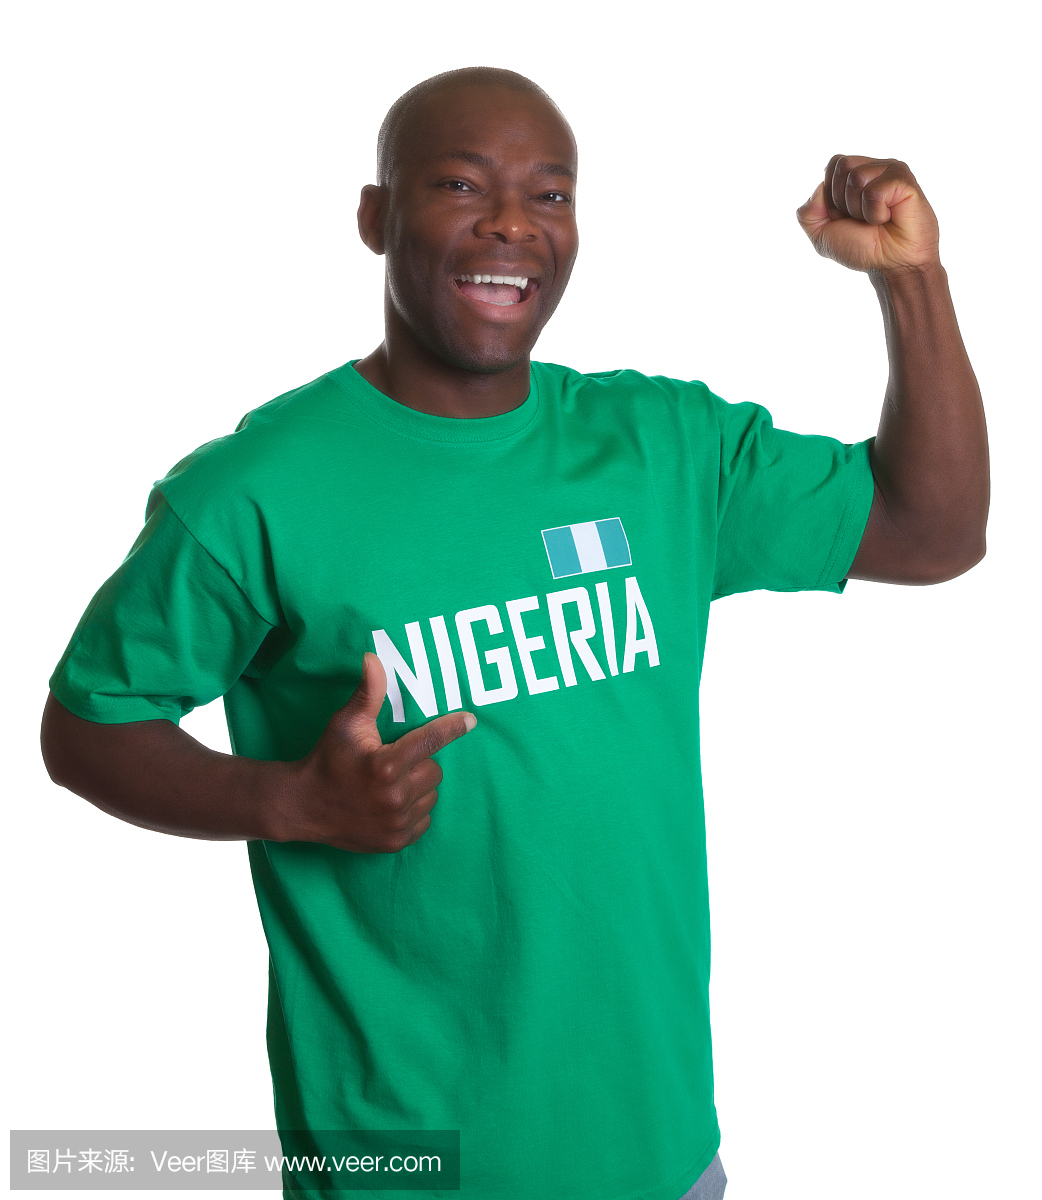 来自尼日利亚的体育迷很高兴